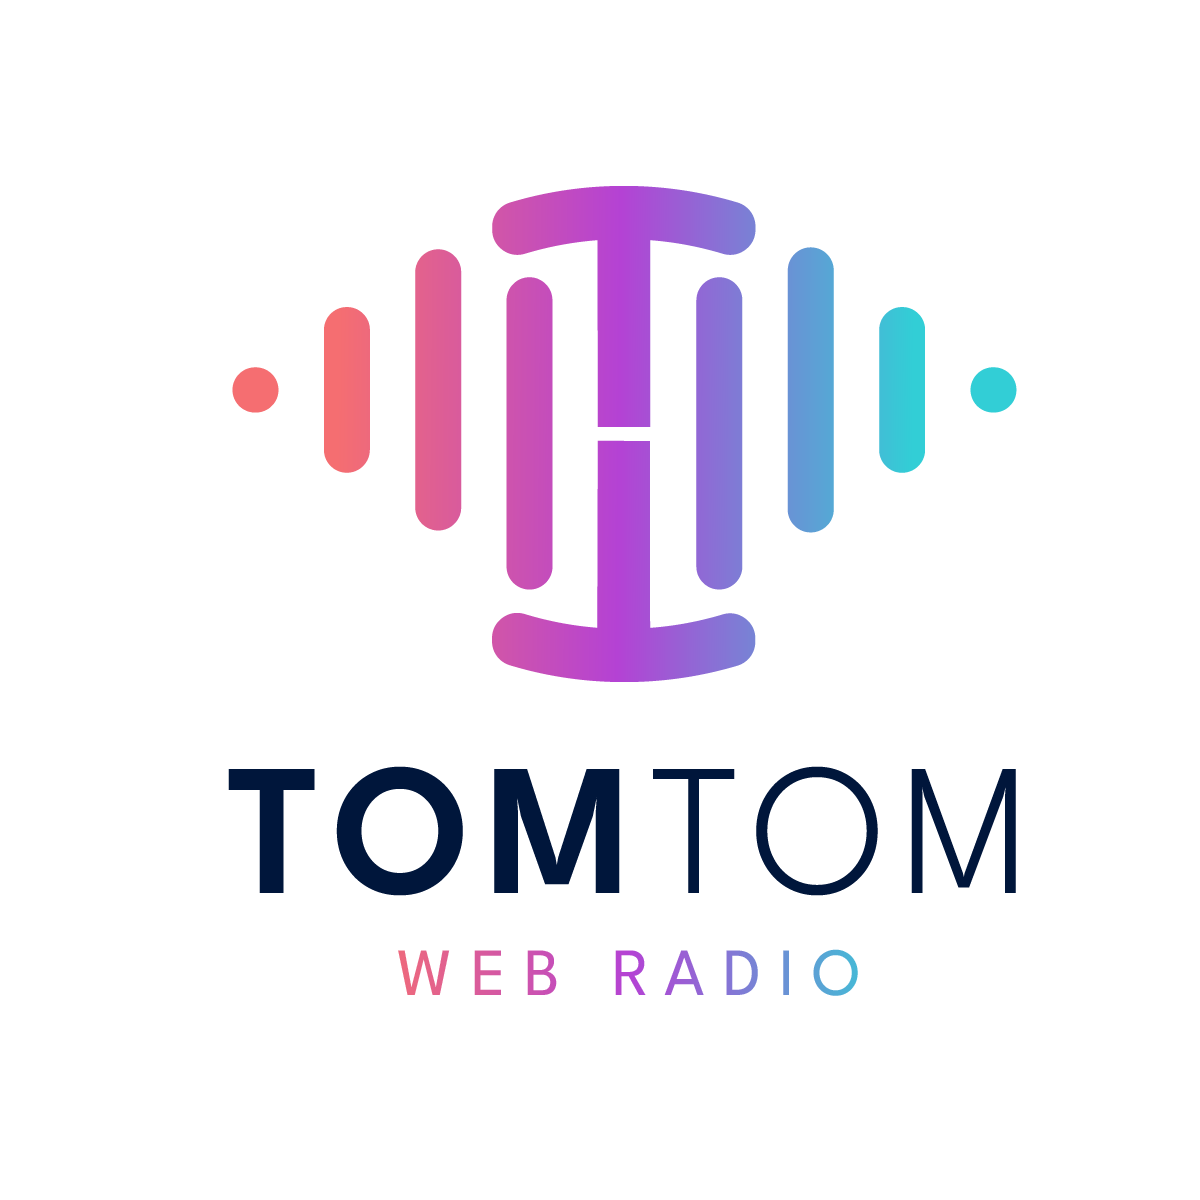 TomTom Web Radio